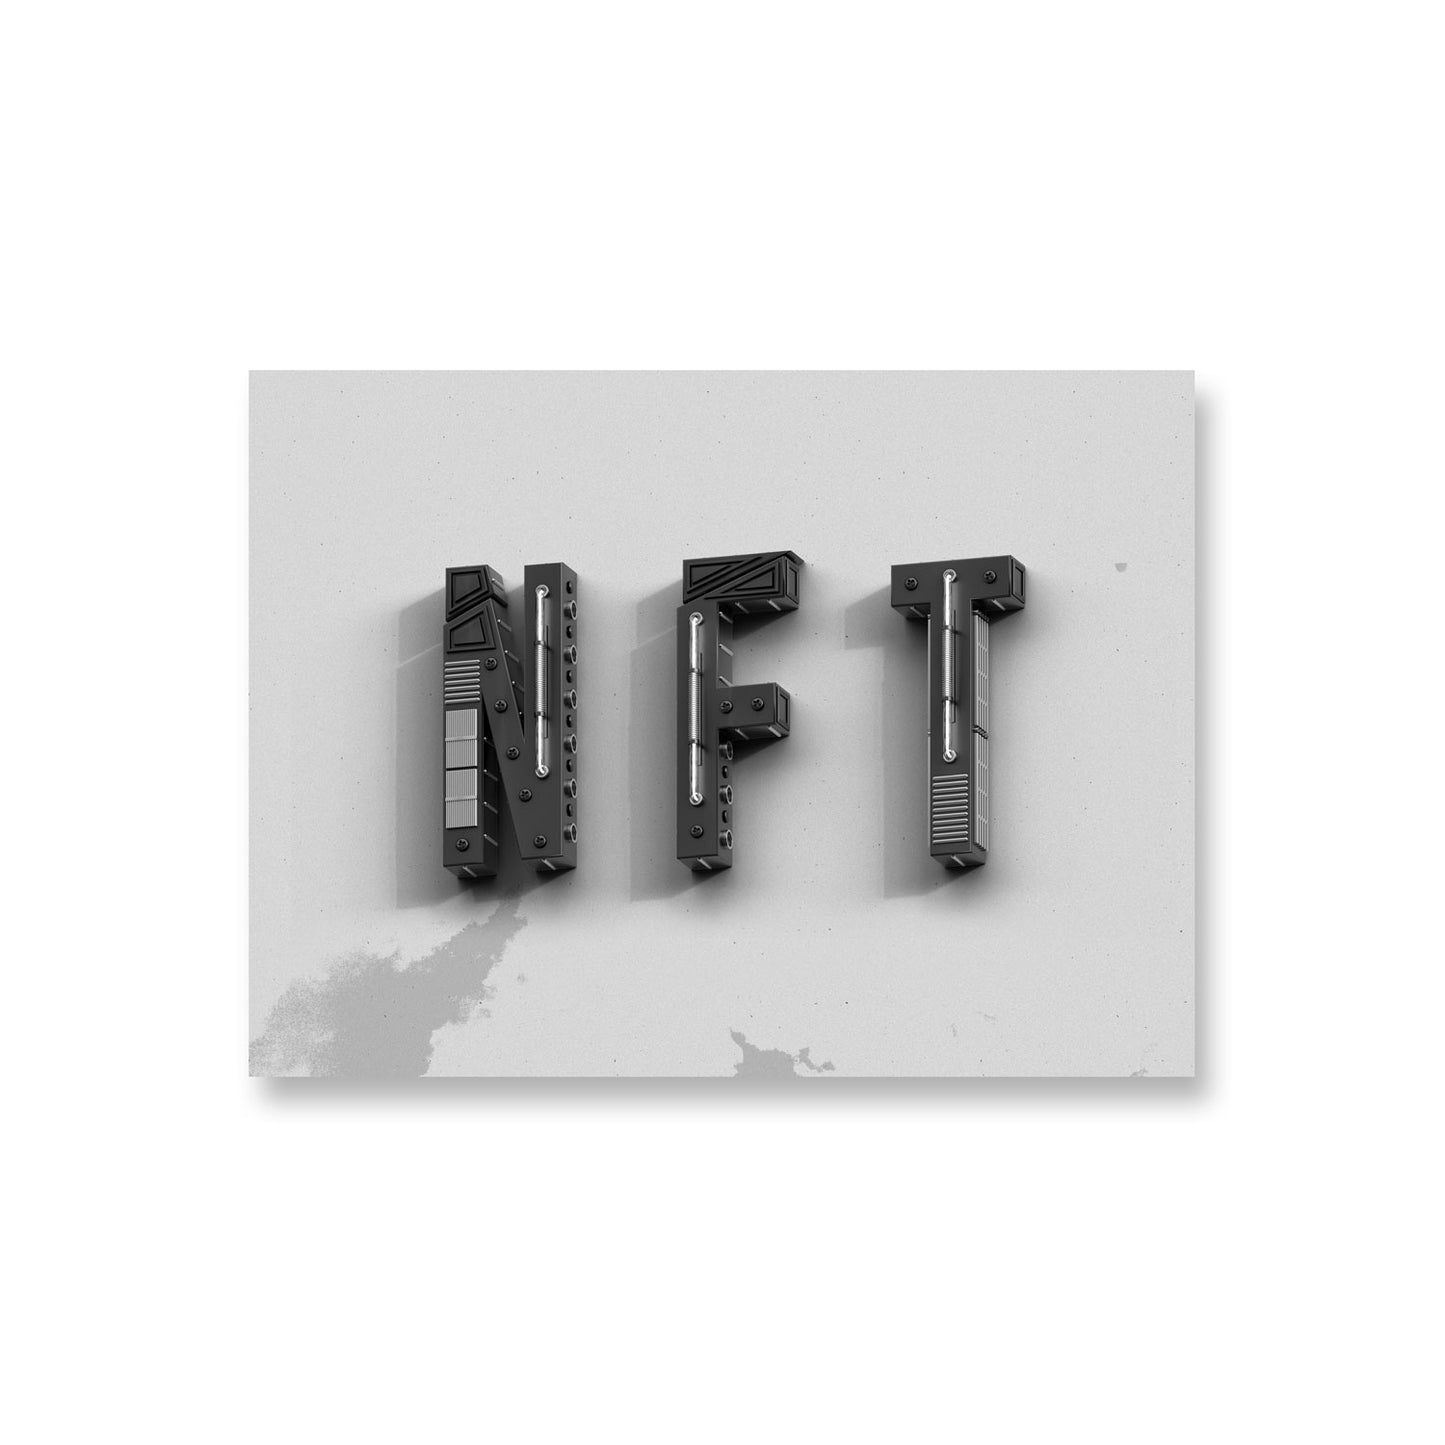 nft design hardware poster 